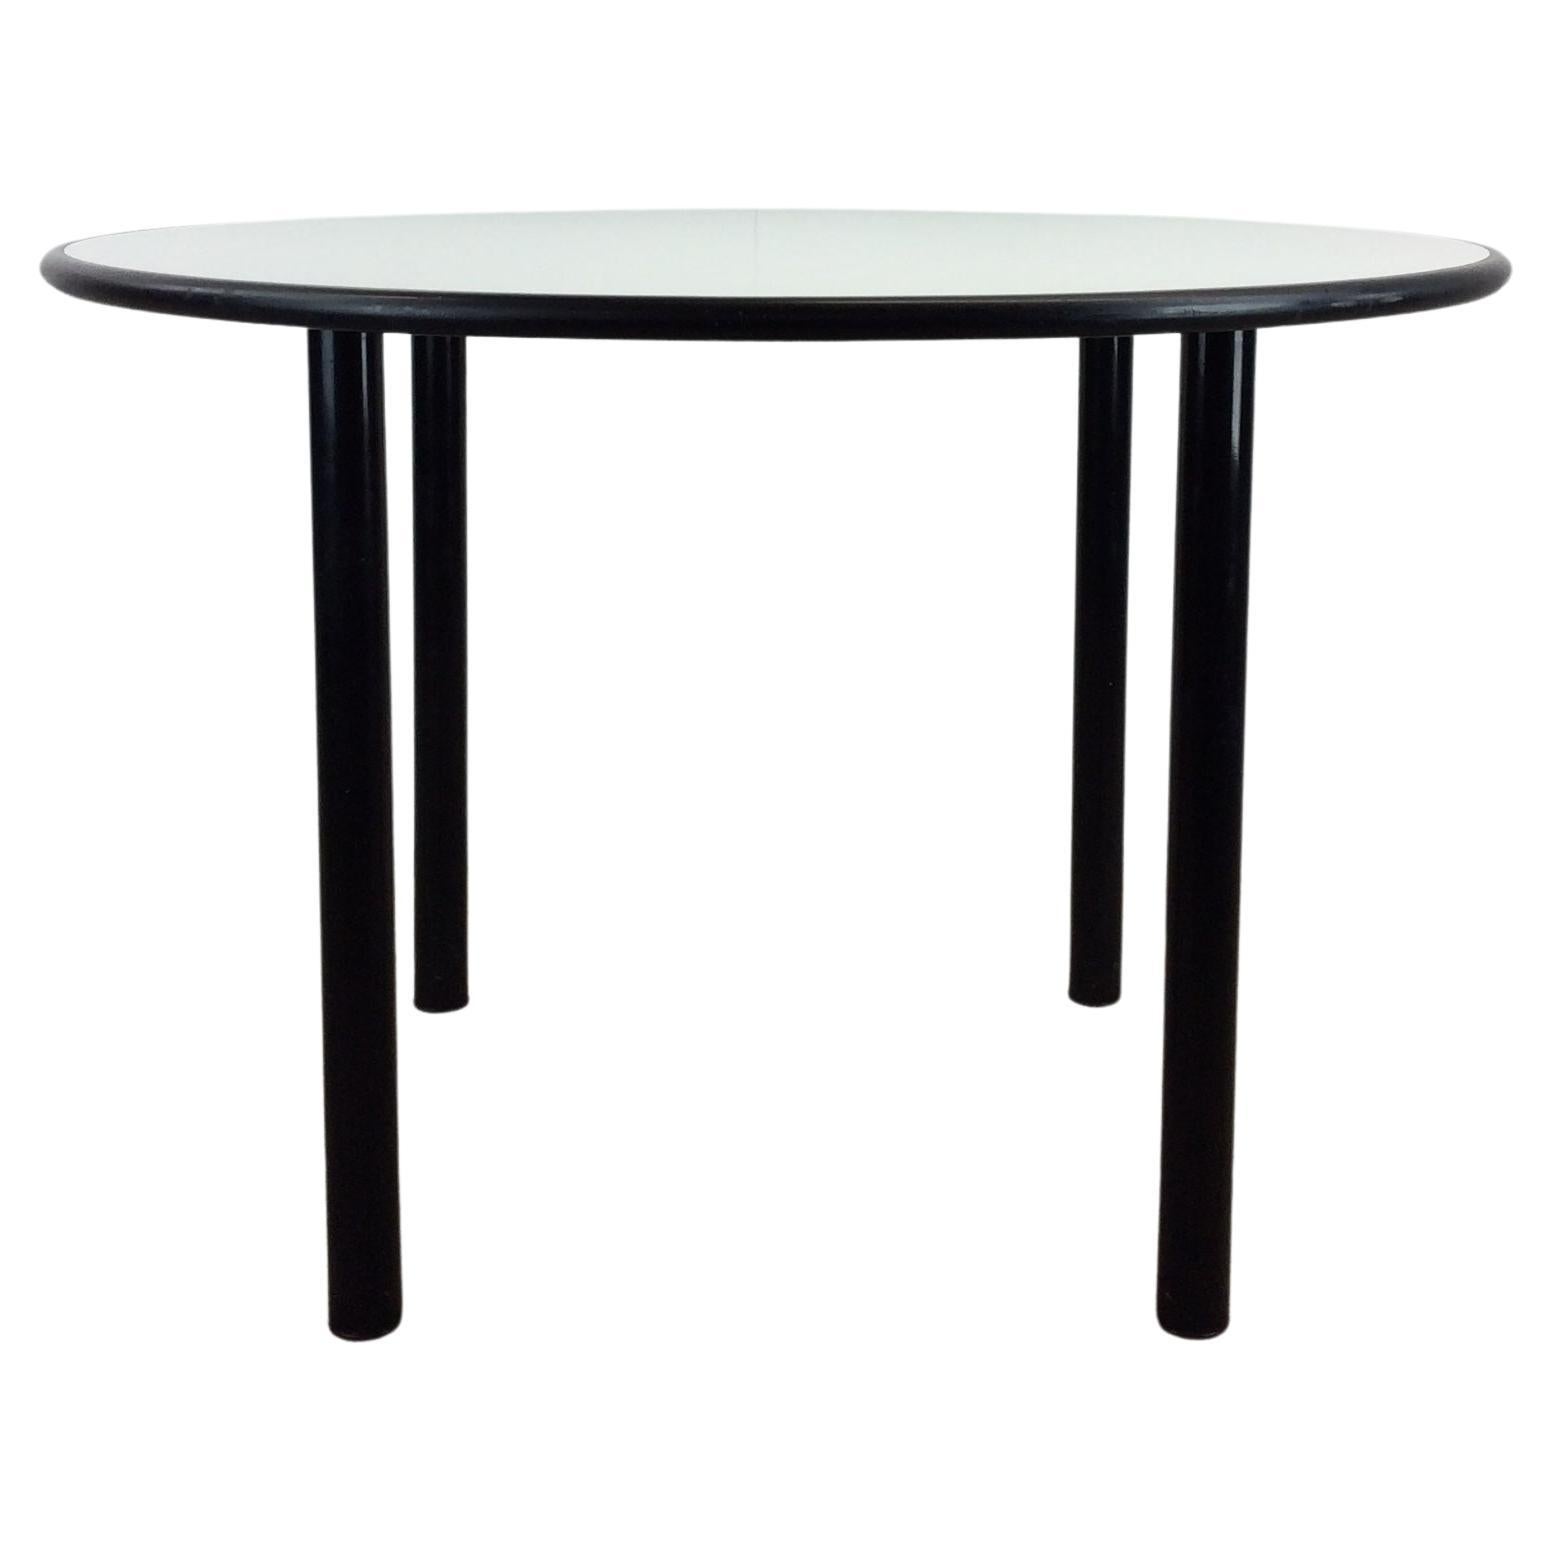 Table de salle à manger ronde IKEA noire et blanche avec pieds amovibles